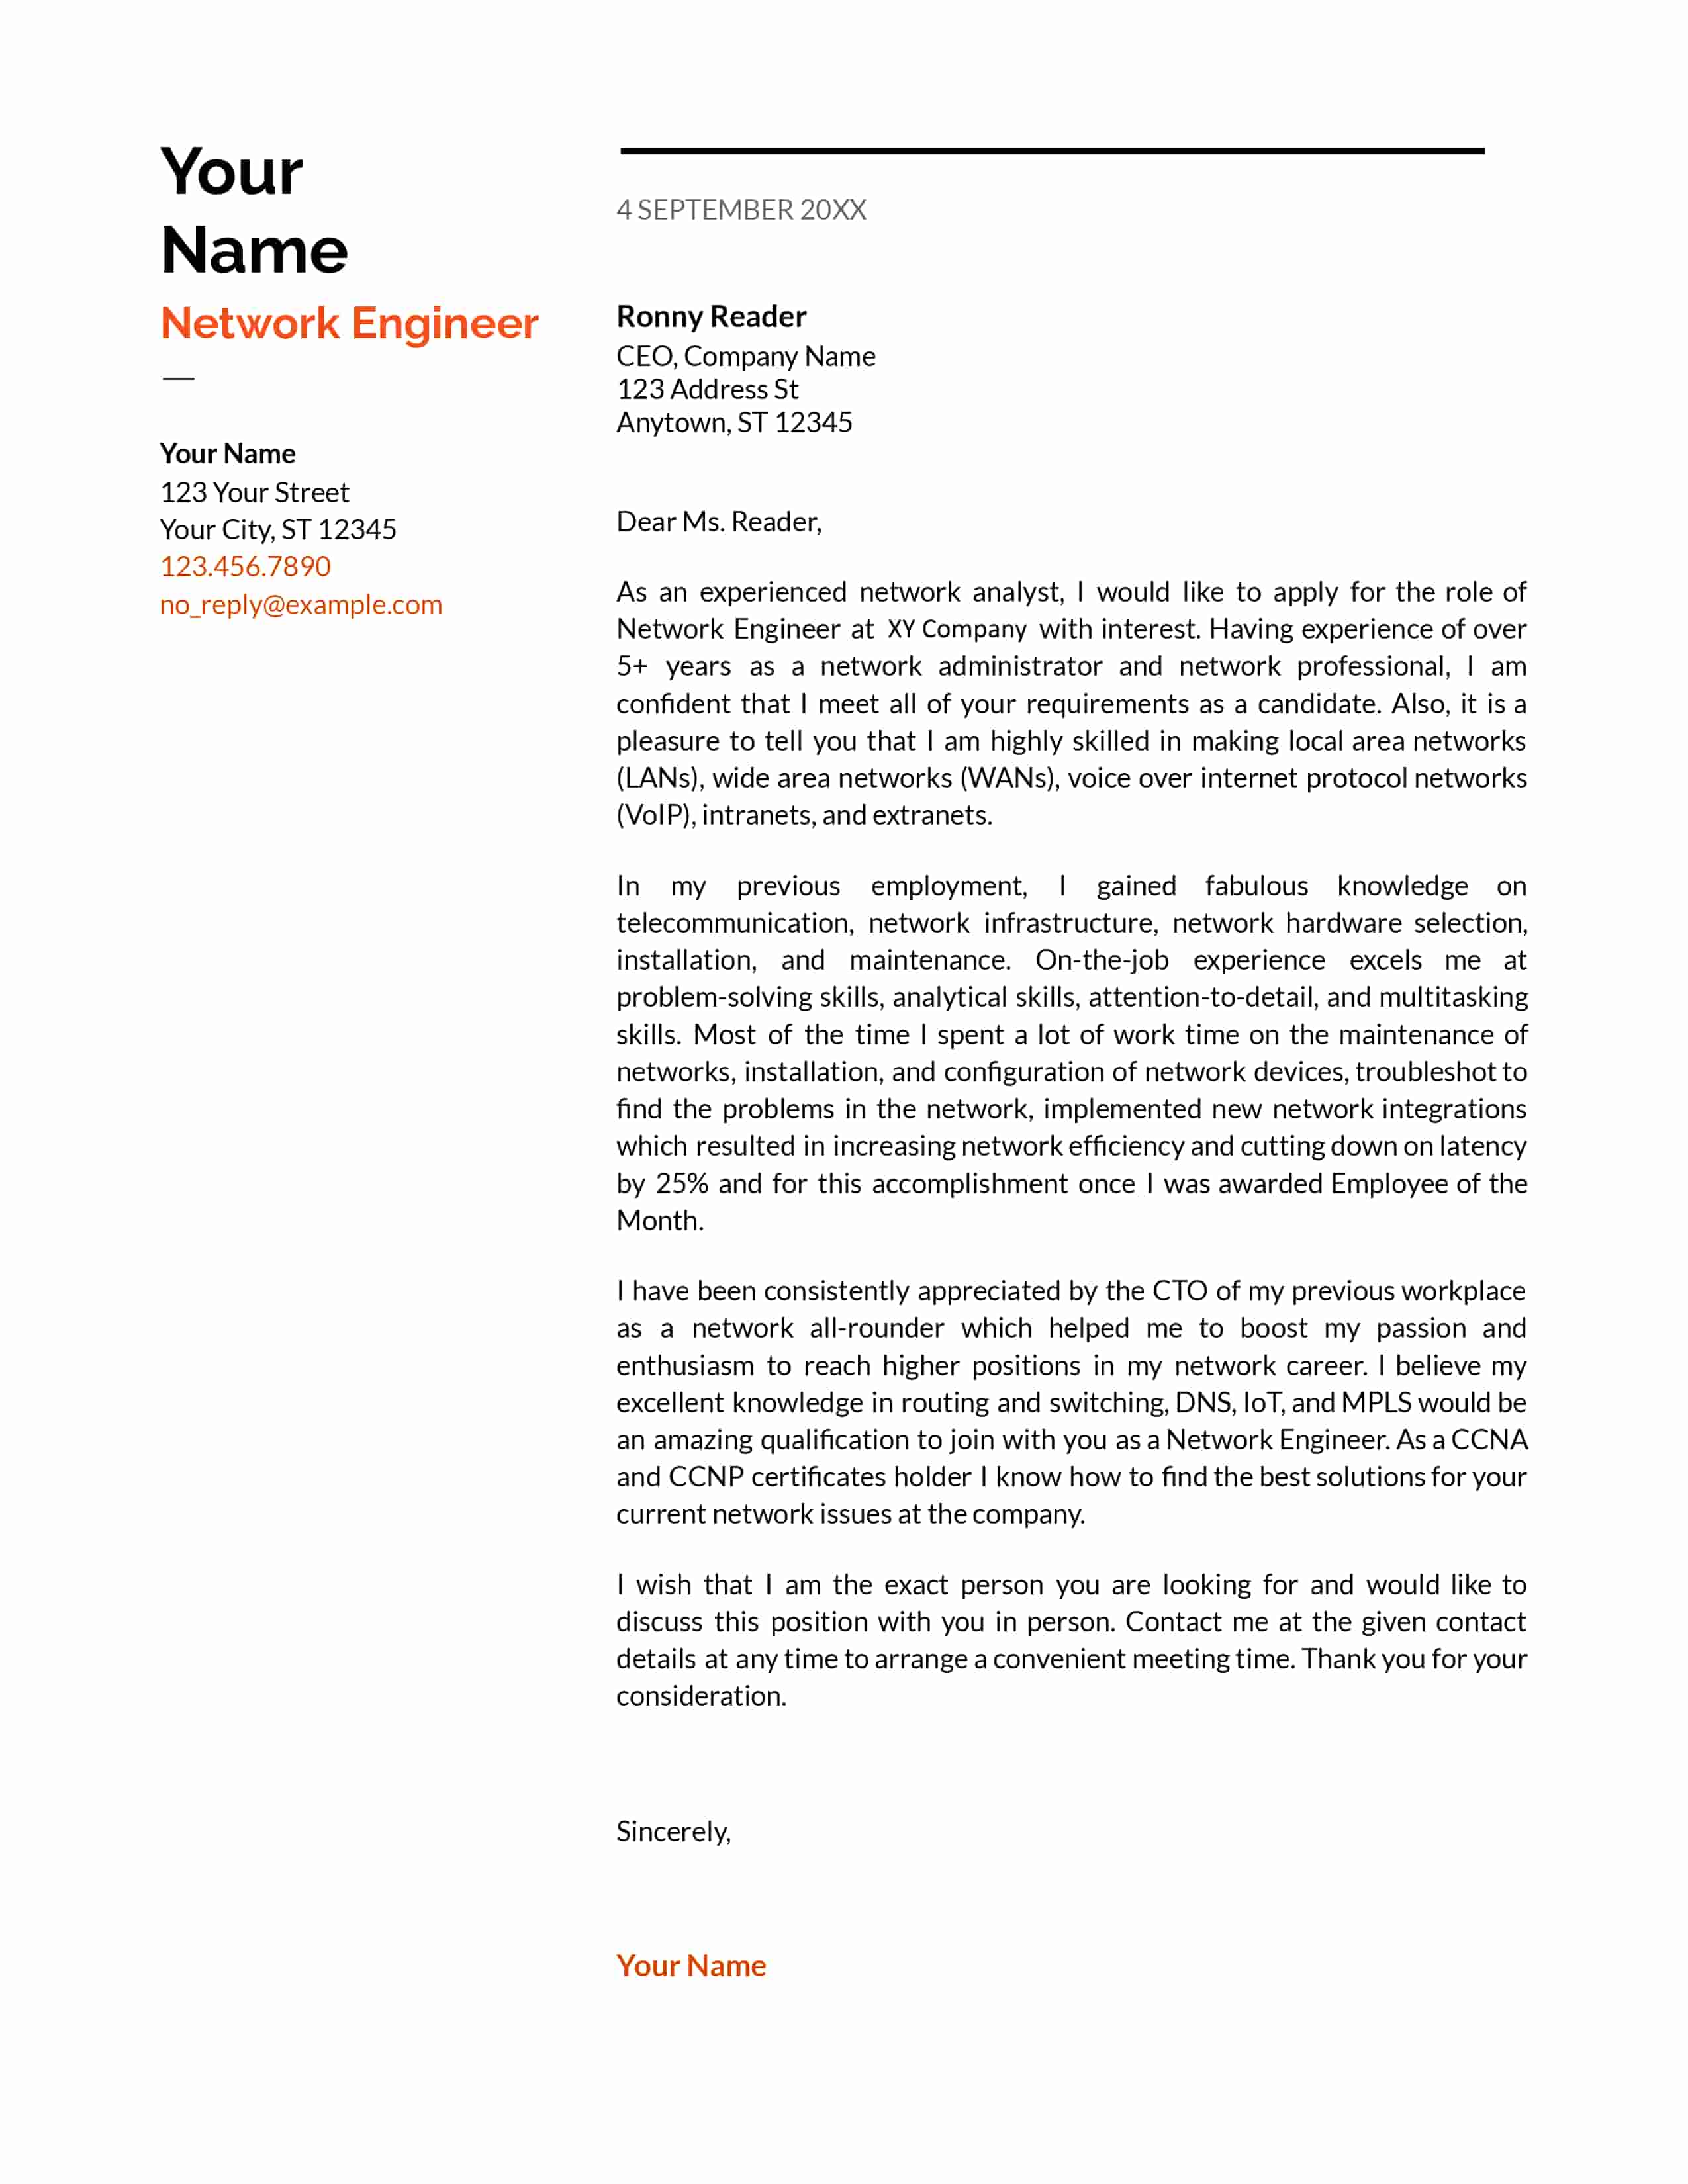 Network Engineer cover letter sample - Cresuma